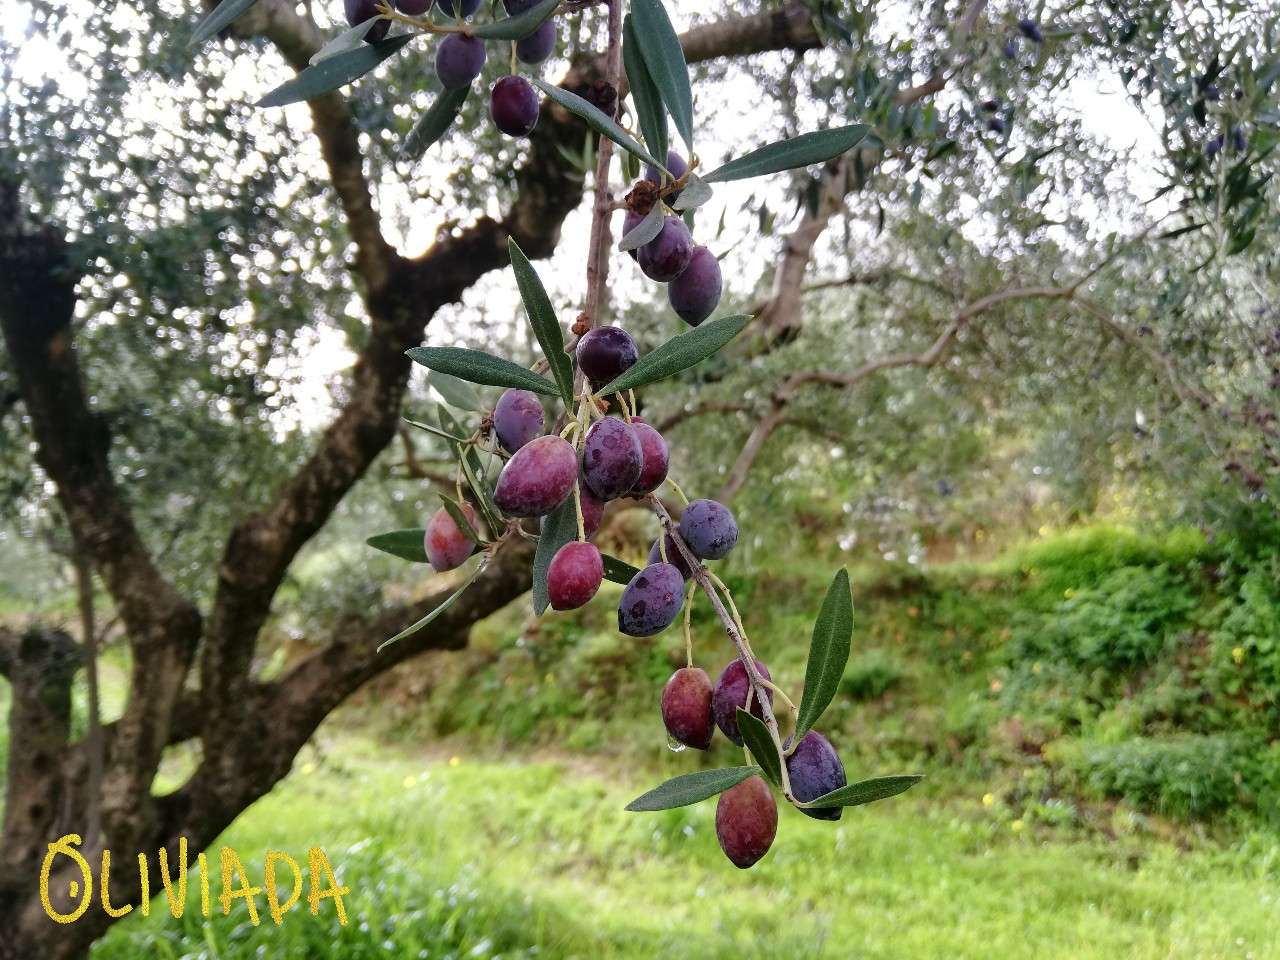 koroneiki and athinolia olives mix